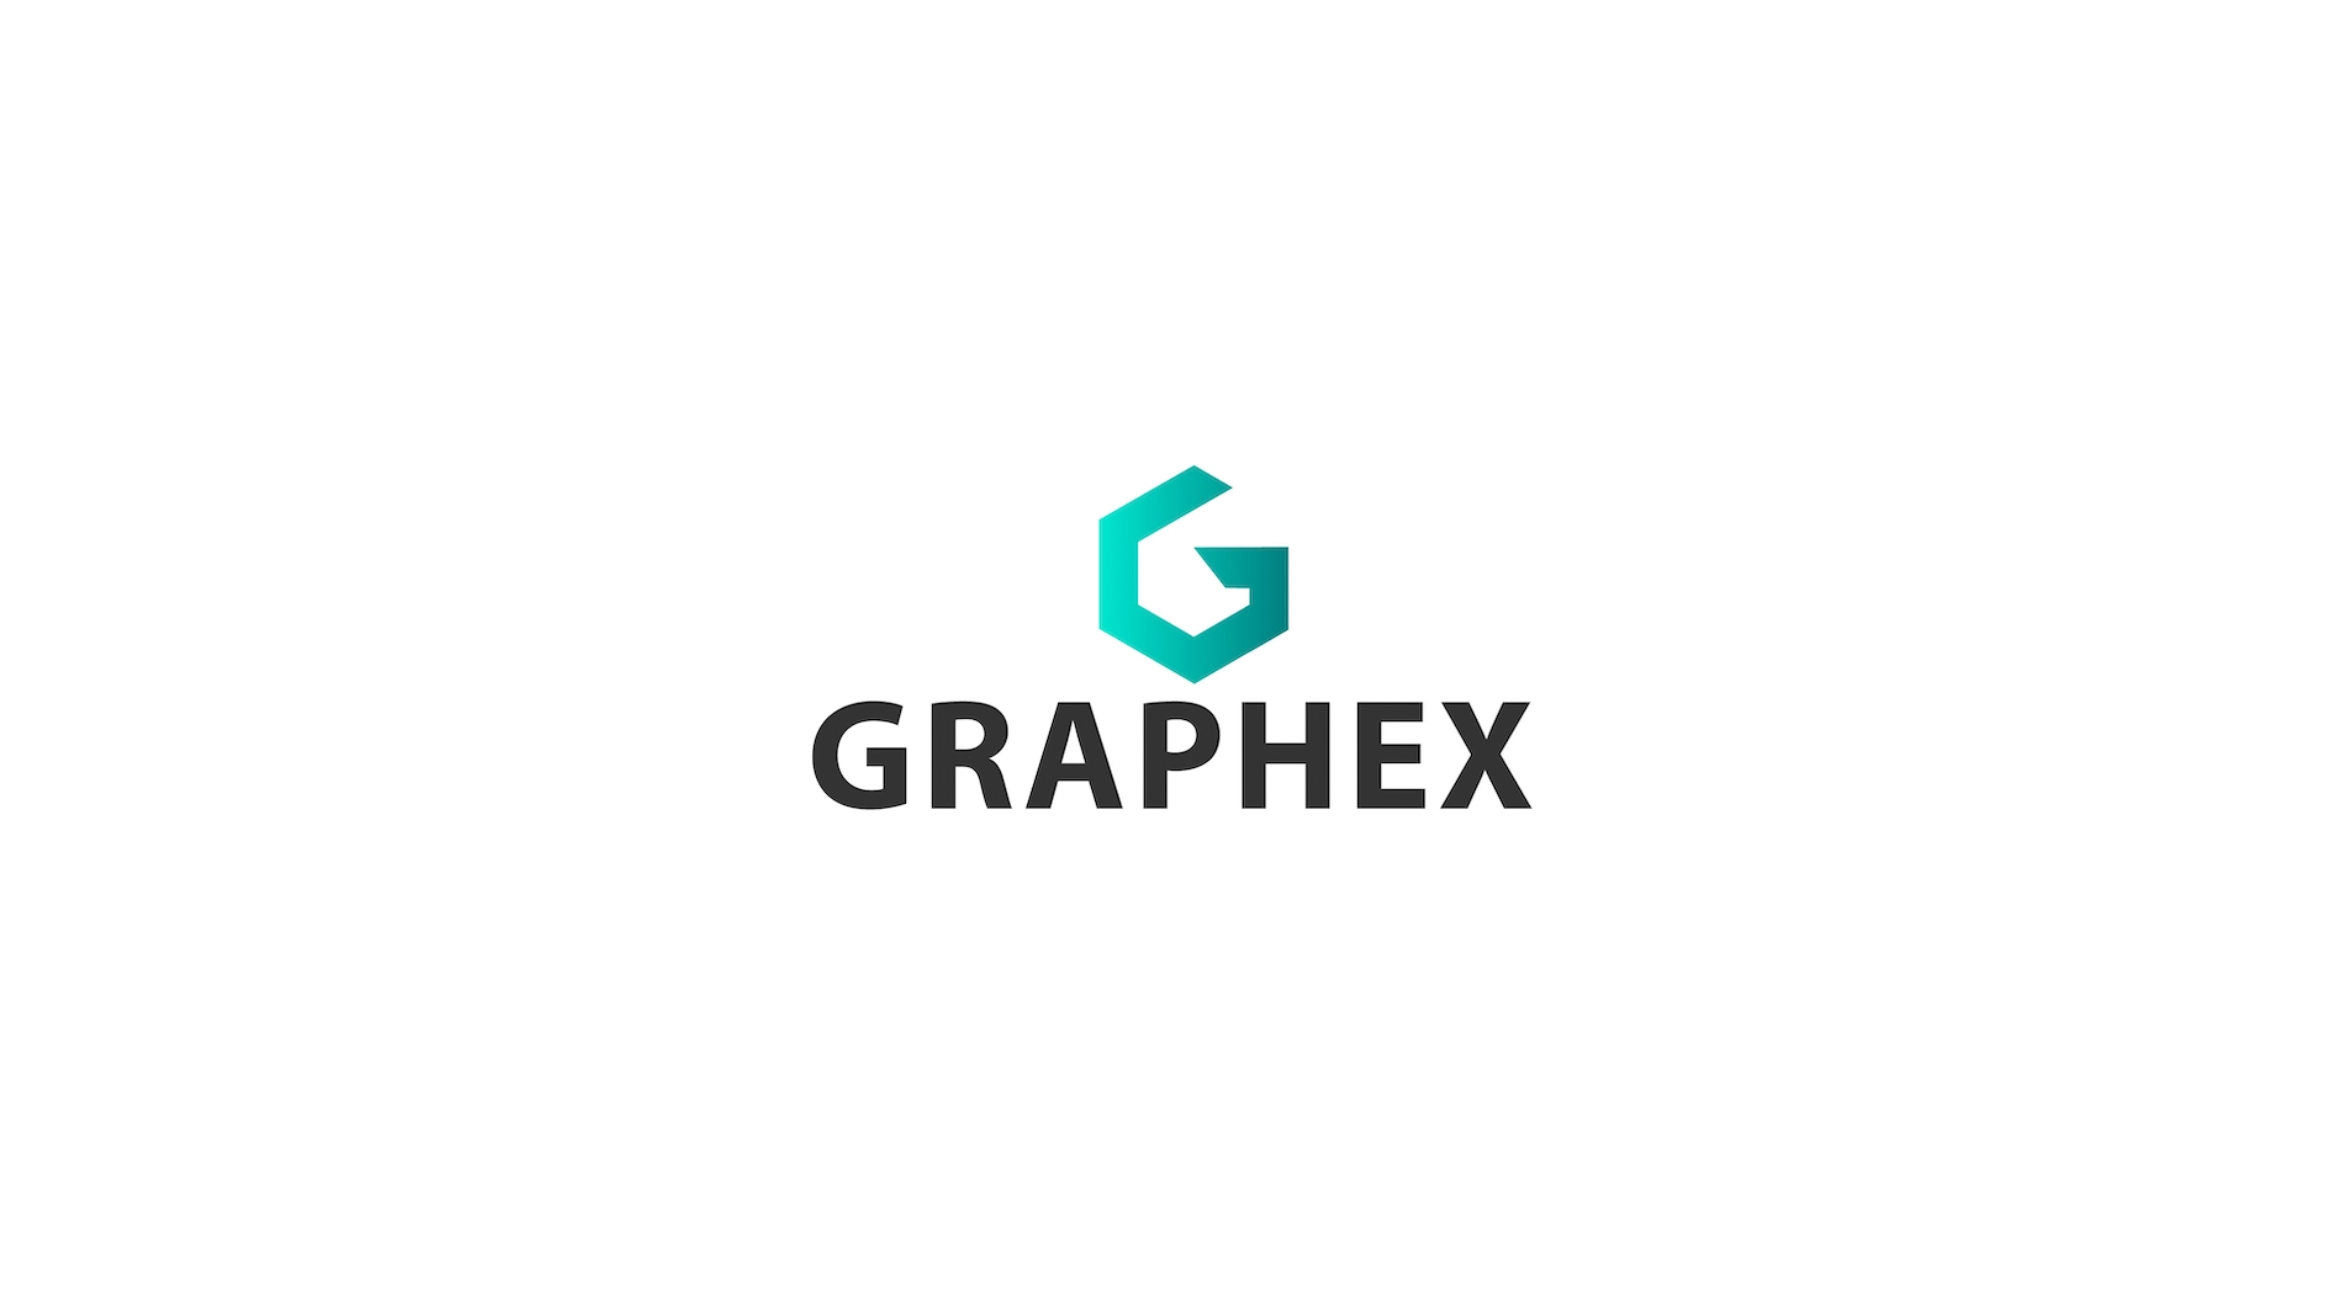 GRAPHEX